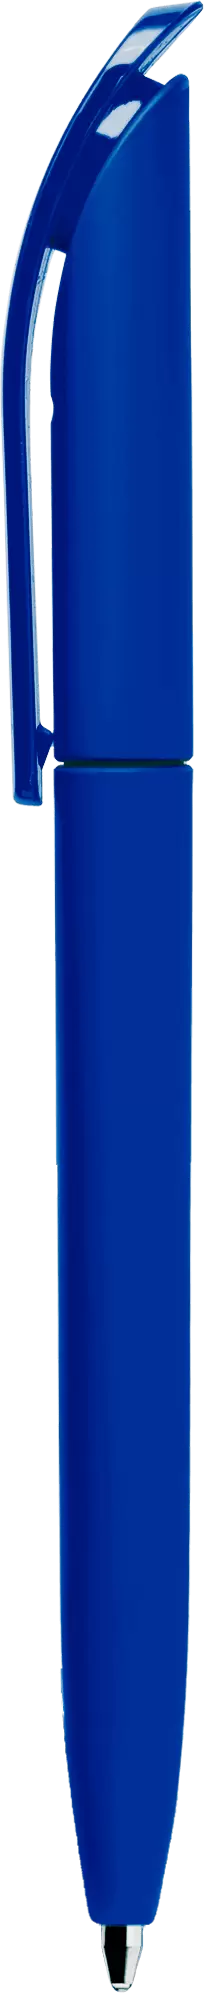 Ручка VIVALDI SOFT MIX Синяя с синим 1338-01-01